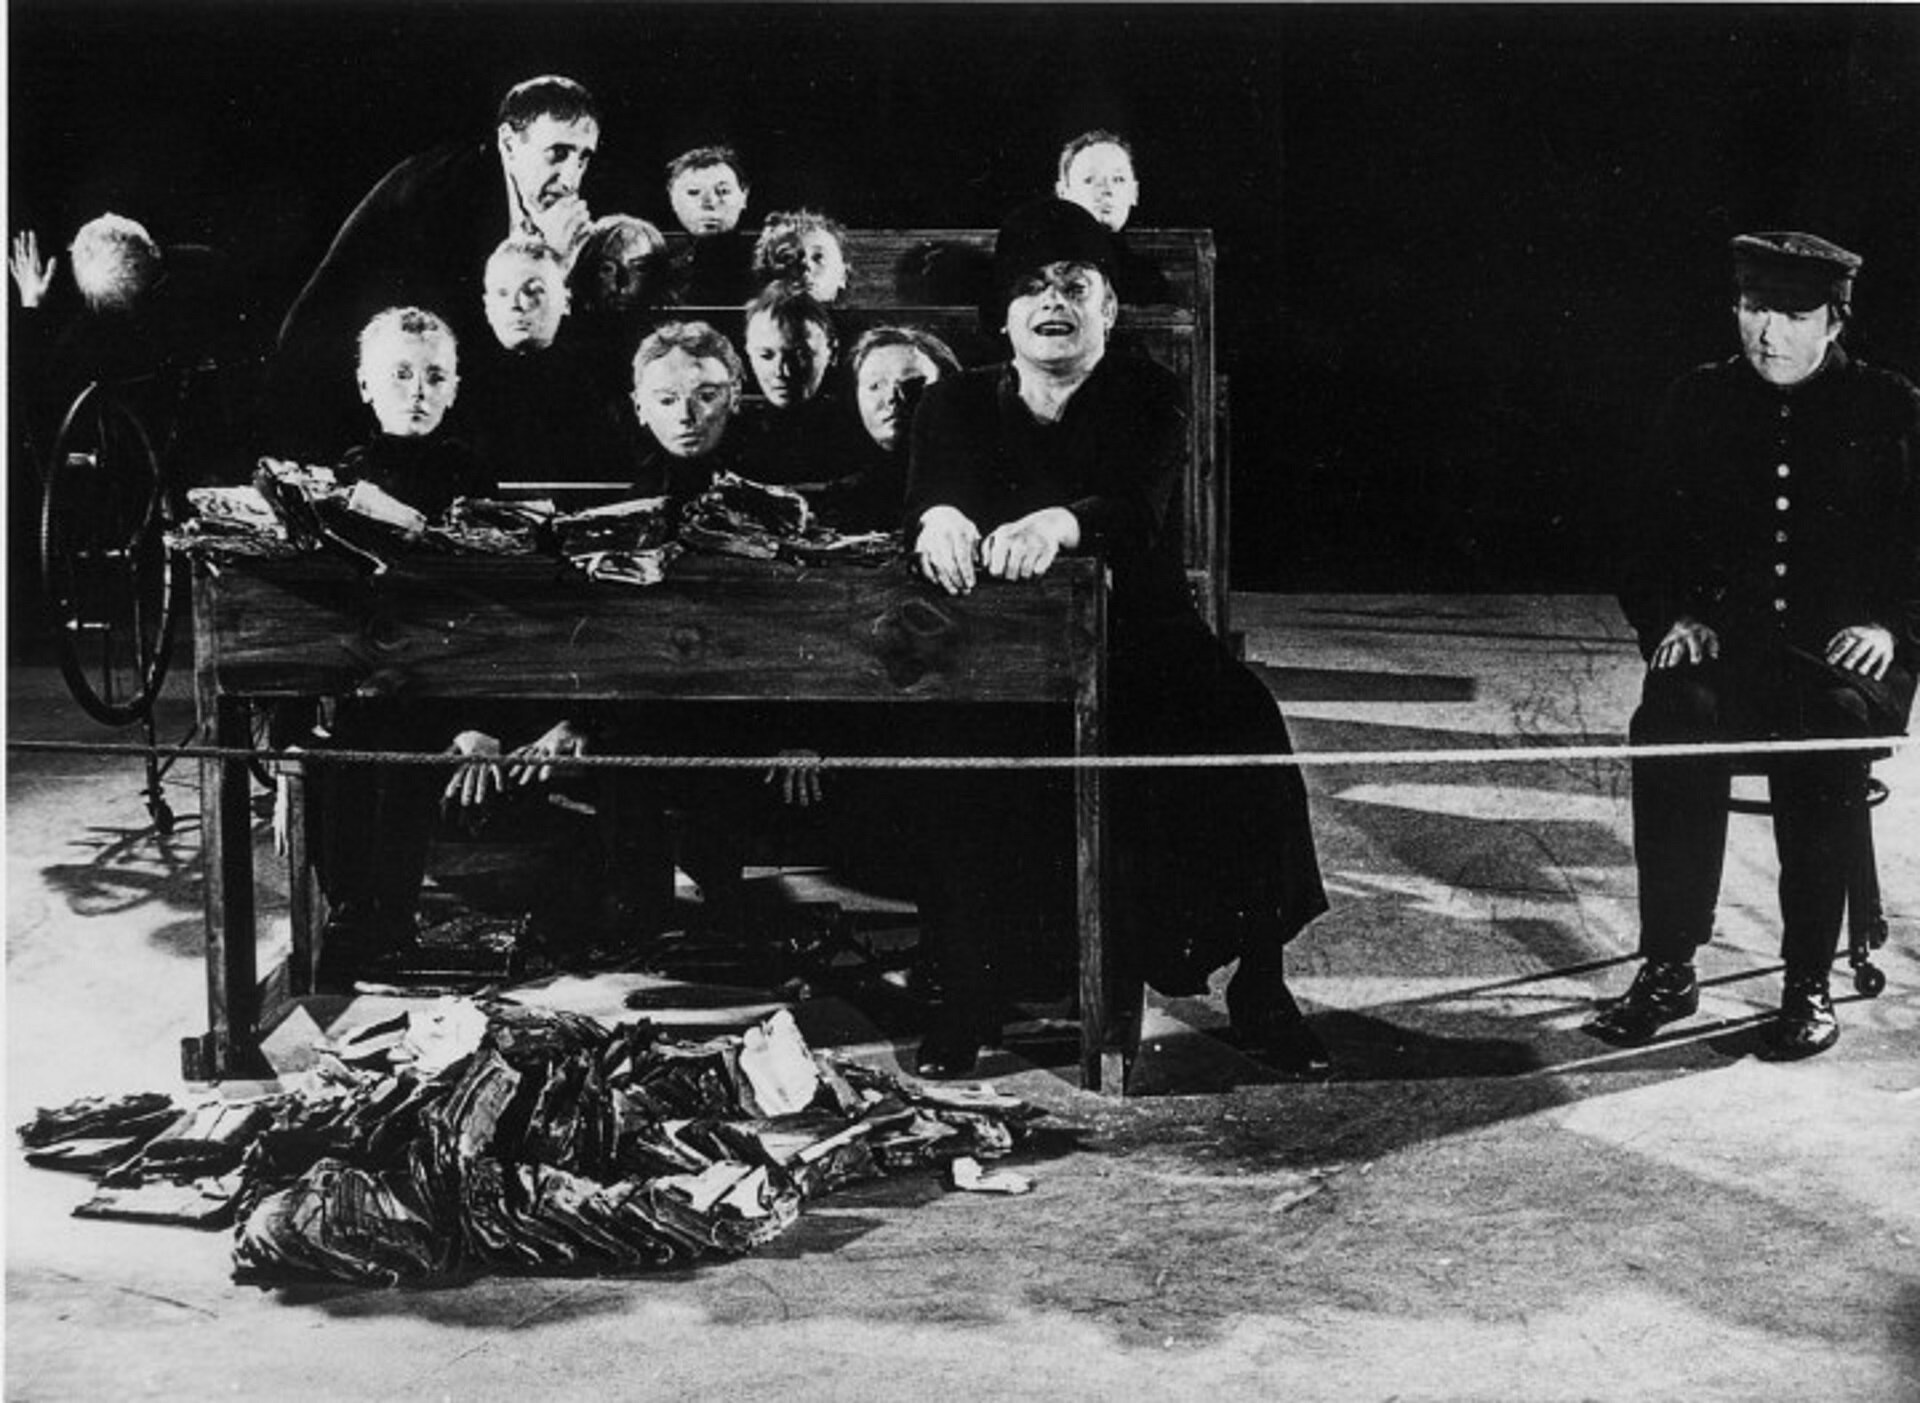 Ilustracja przedstawia czarno-białą fotografię, która przedstawia aktorów na scenie, ubrani są wszyscy na czarno, mają smutne miny. Aktorzy odgrywali wolę w spektaklu „Umarła klasa”.